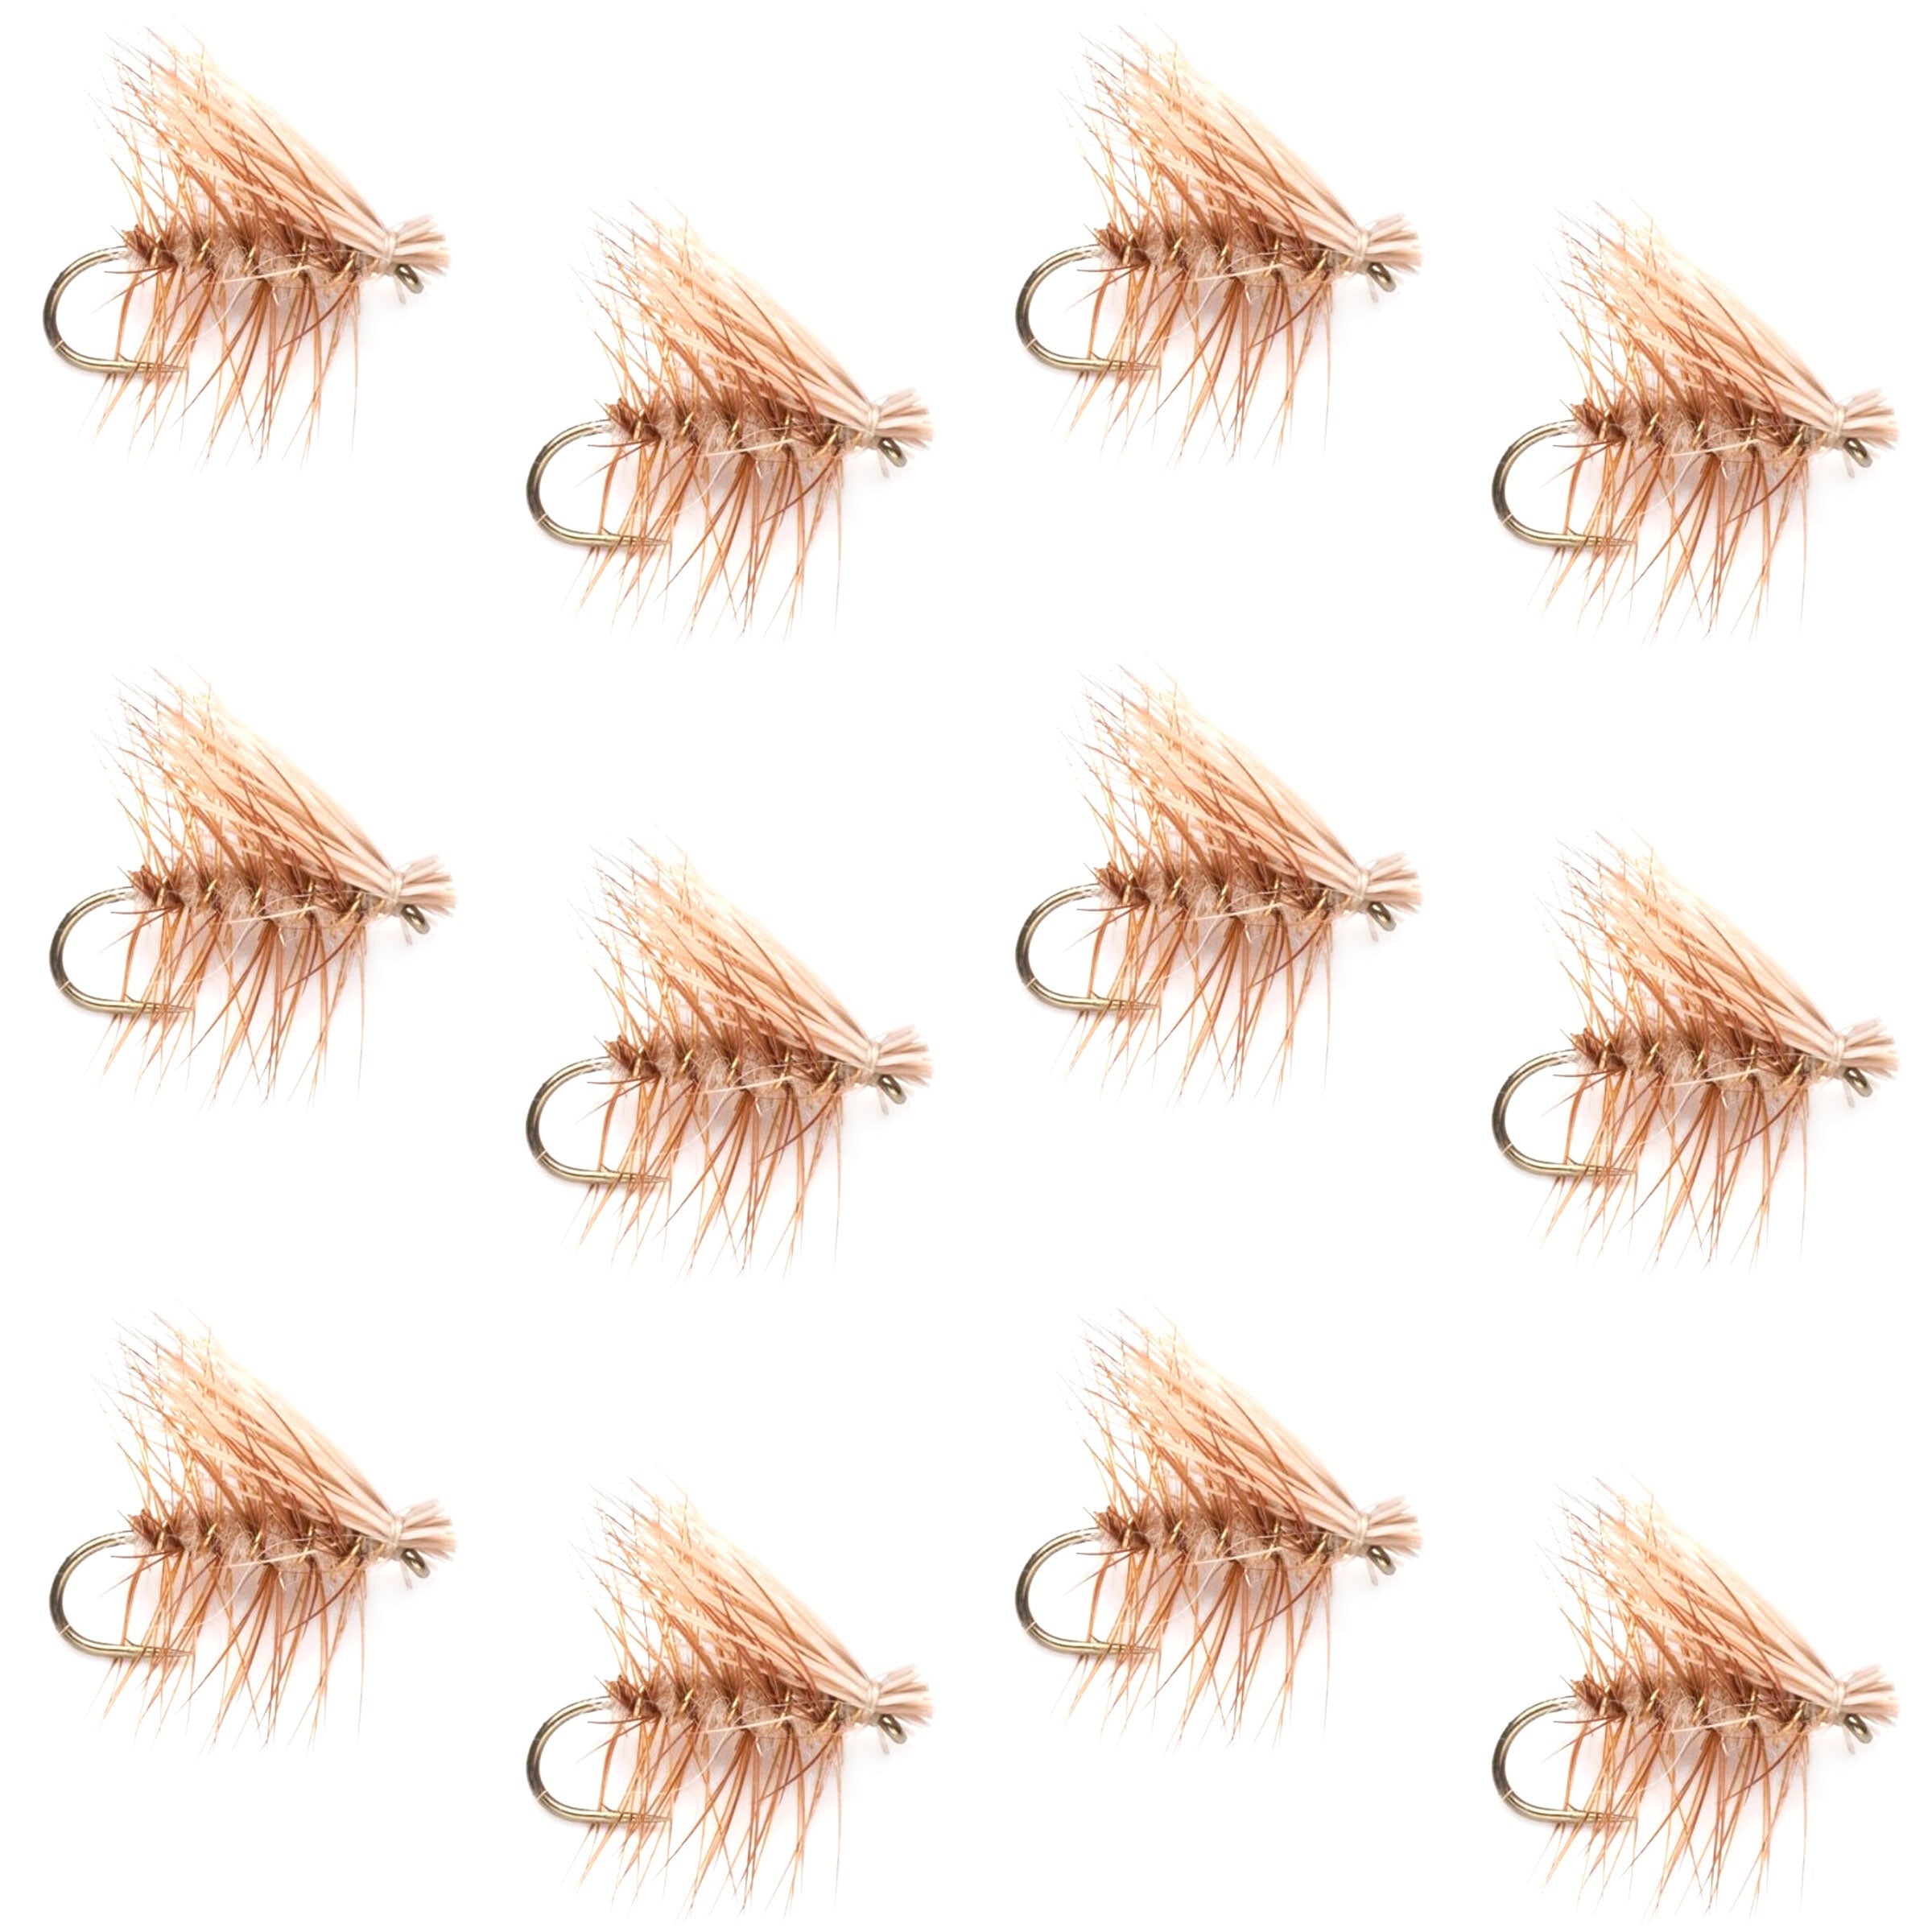 Barbless Tan Elk Hair Caddis Classic Trout Dry Flies 1 Dozen Flies Size 16